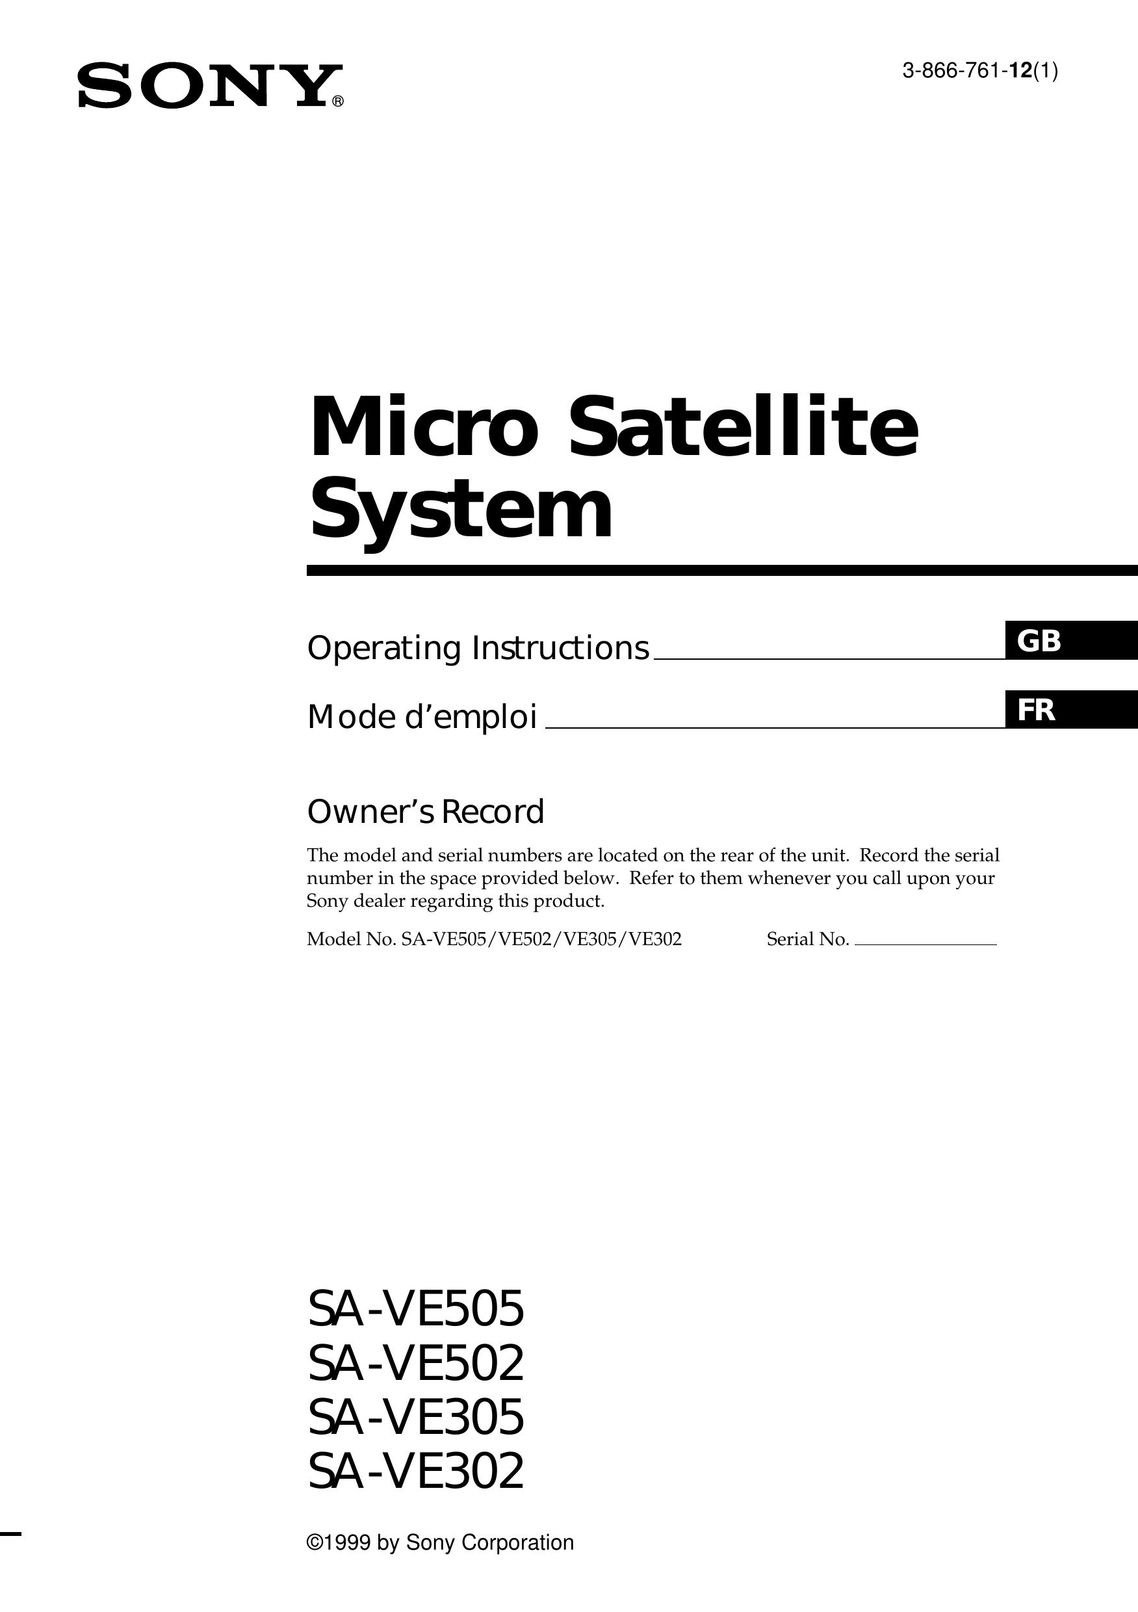 Sony SA-VE302 Satellite TV System User Manual